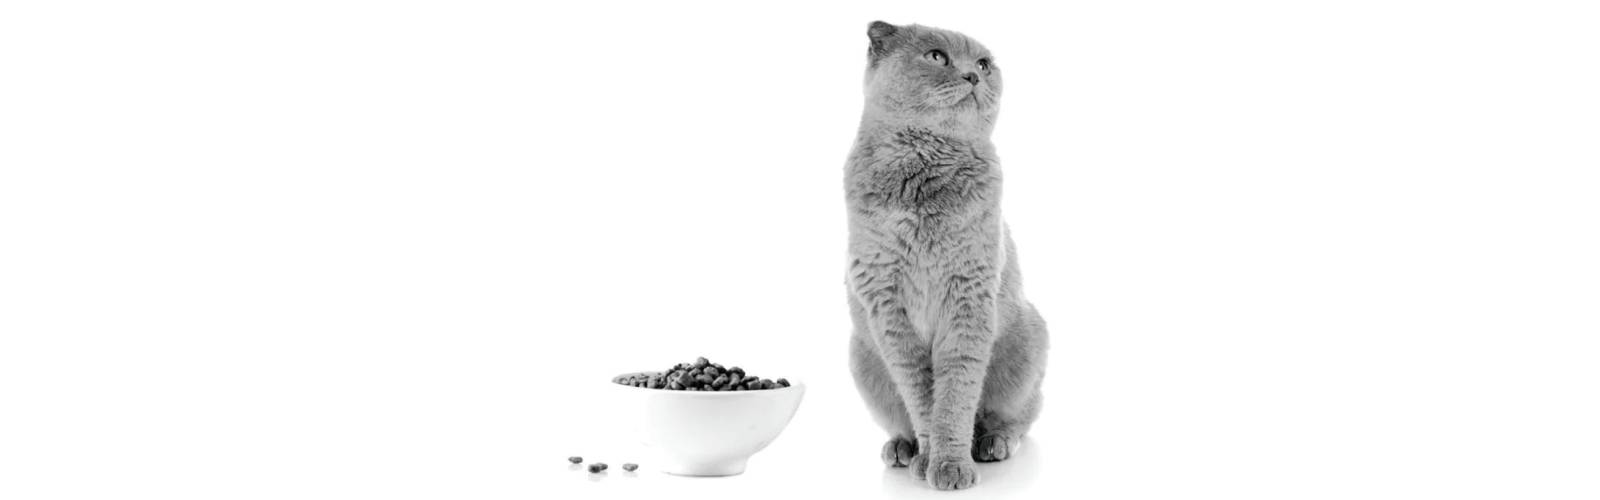 گربه در کنار غذایش|استرلایزد گربه | غذای گربه عقیم شده